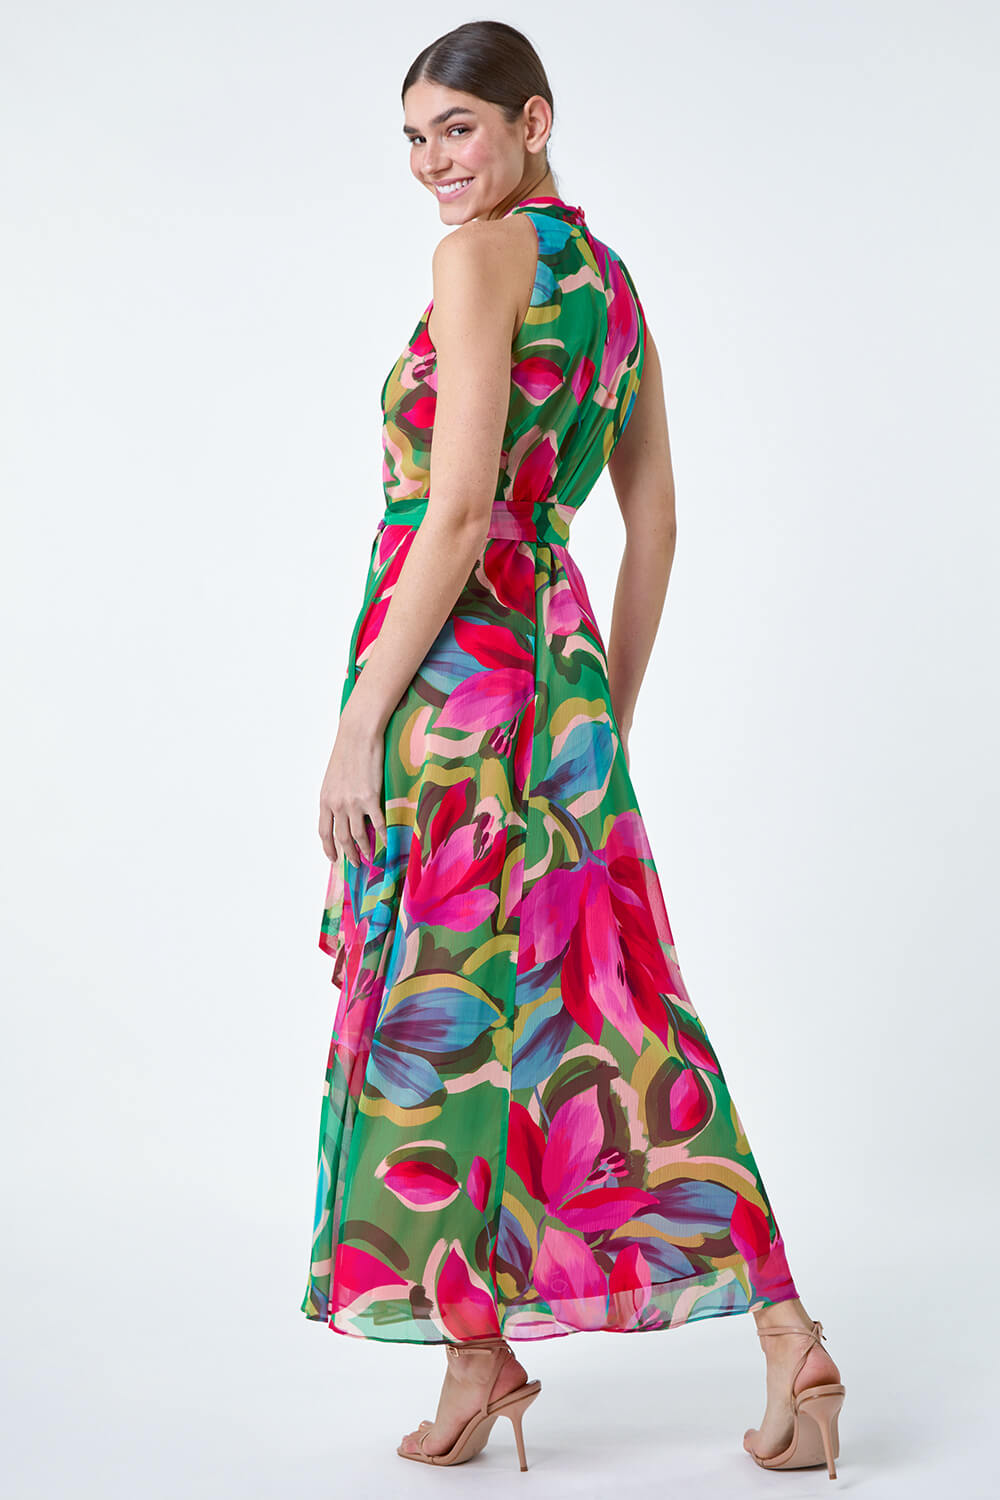 CERISE Floral Print Halterneck Maxi Dress, Image 3 of 5